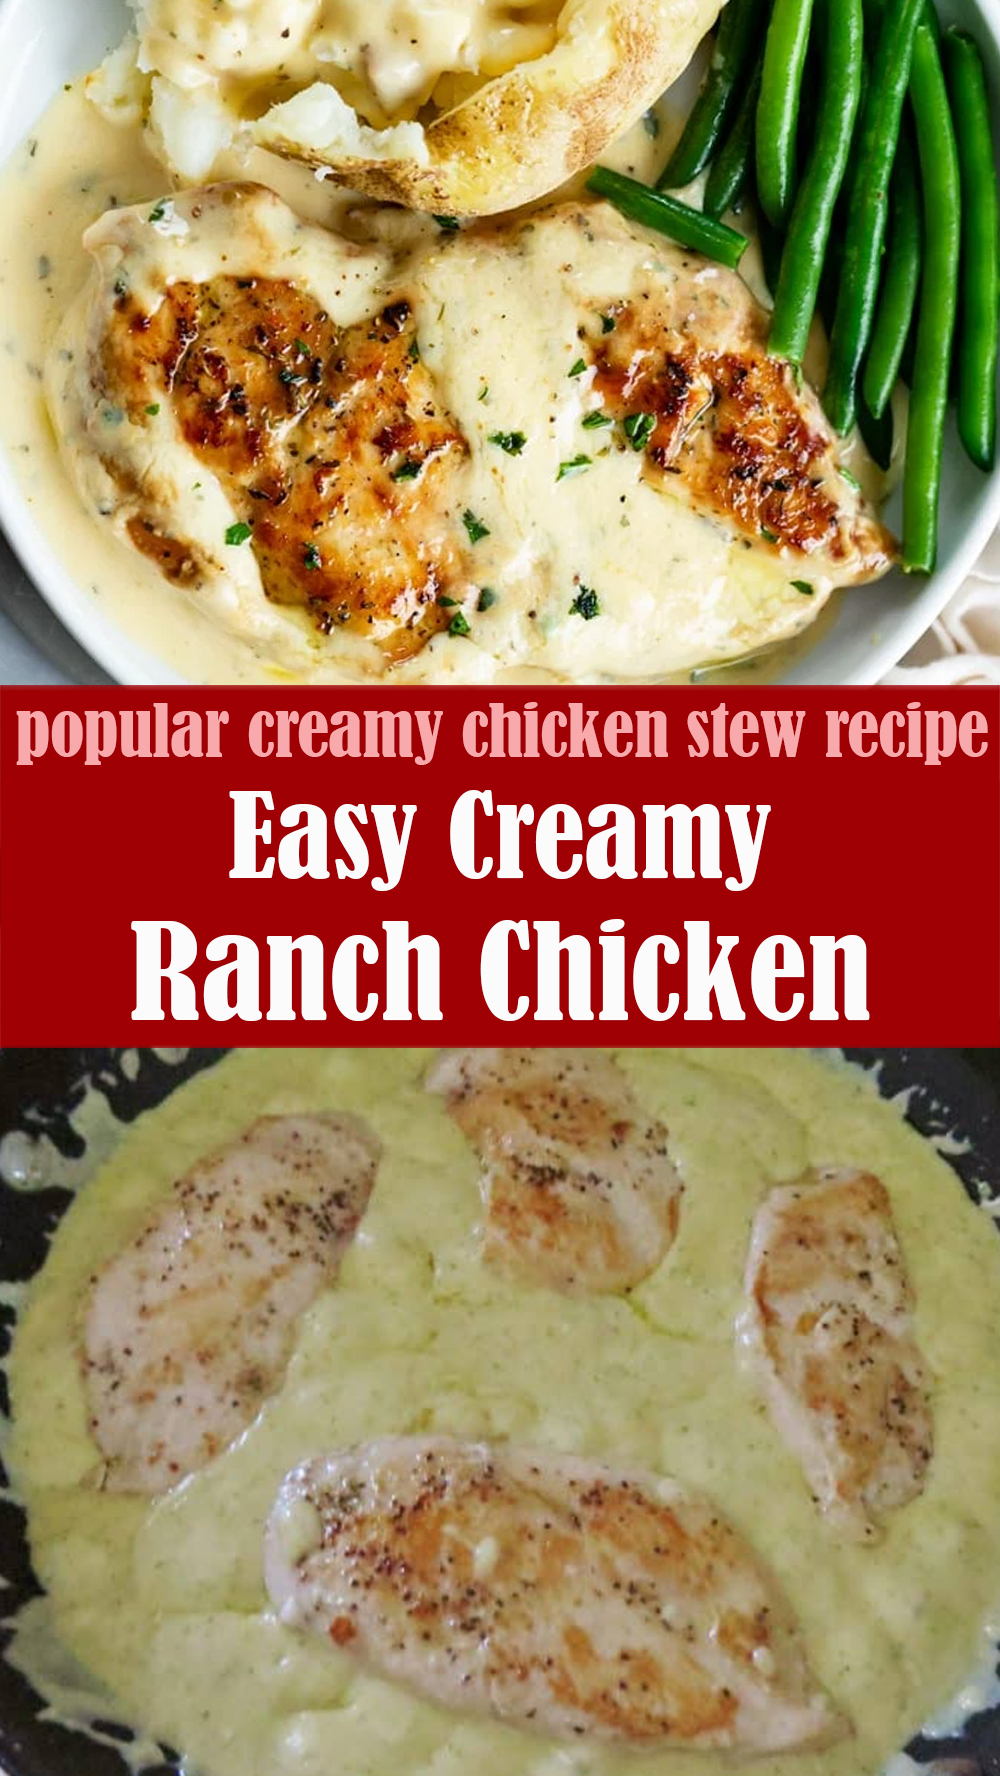 Easy Creamy Ranch Chicken Recipe